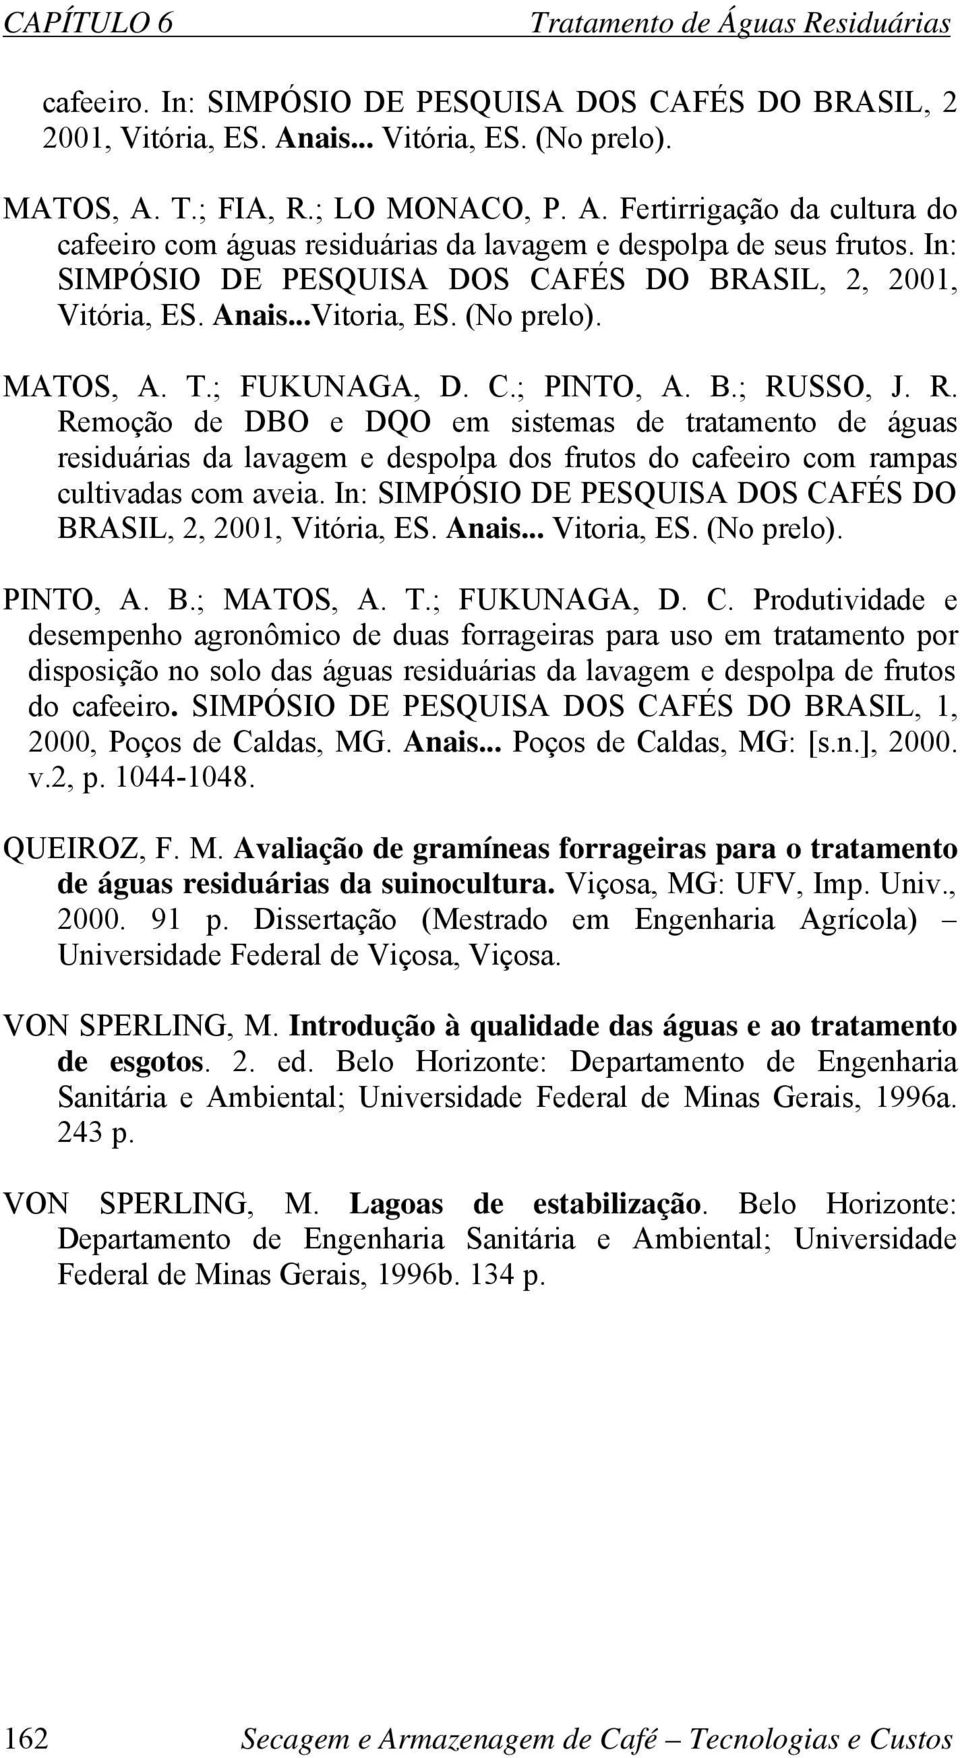 In: SIMPÓSIO DE PESQUISA DOS CAFÉS DO BRASIL, 2, 2001, Vitória, ES. Anais...Vitoria, ES. (No prelo). MATOS, A. T.; FUKUNAGA, D. C.; PINTO, A. B.; RU